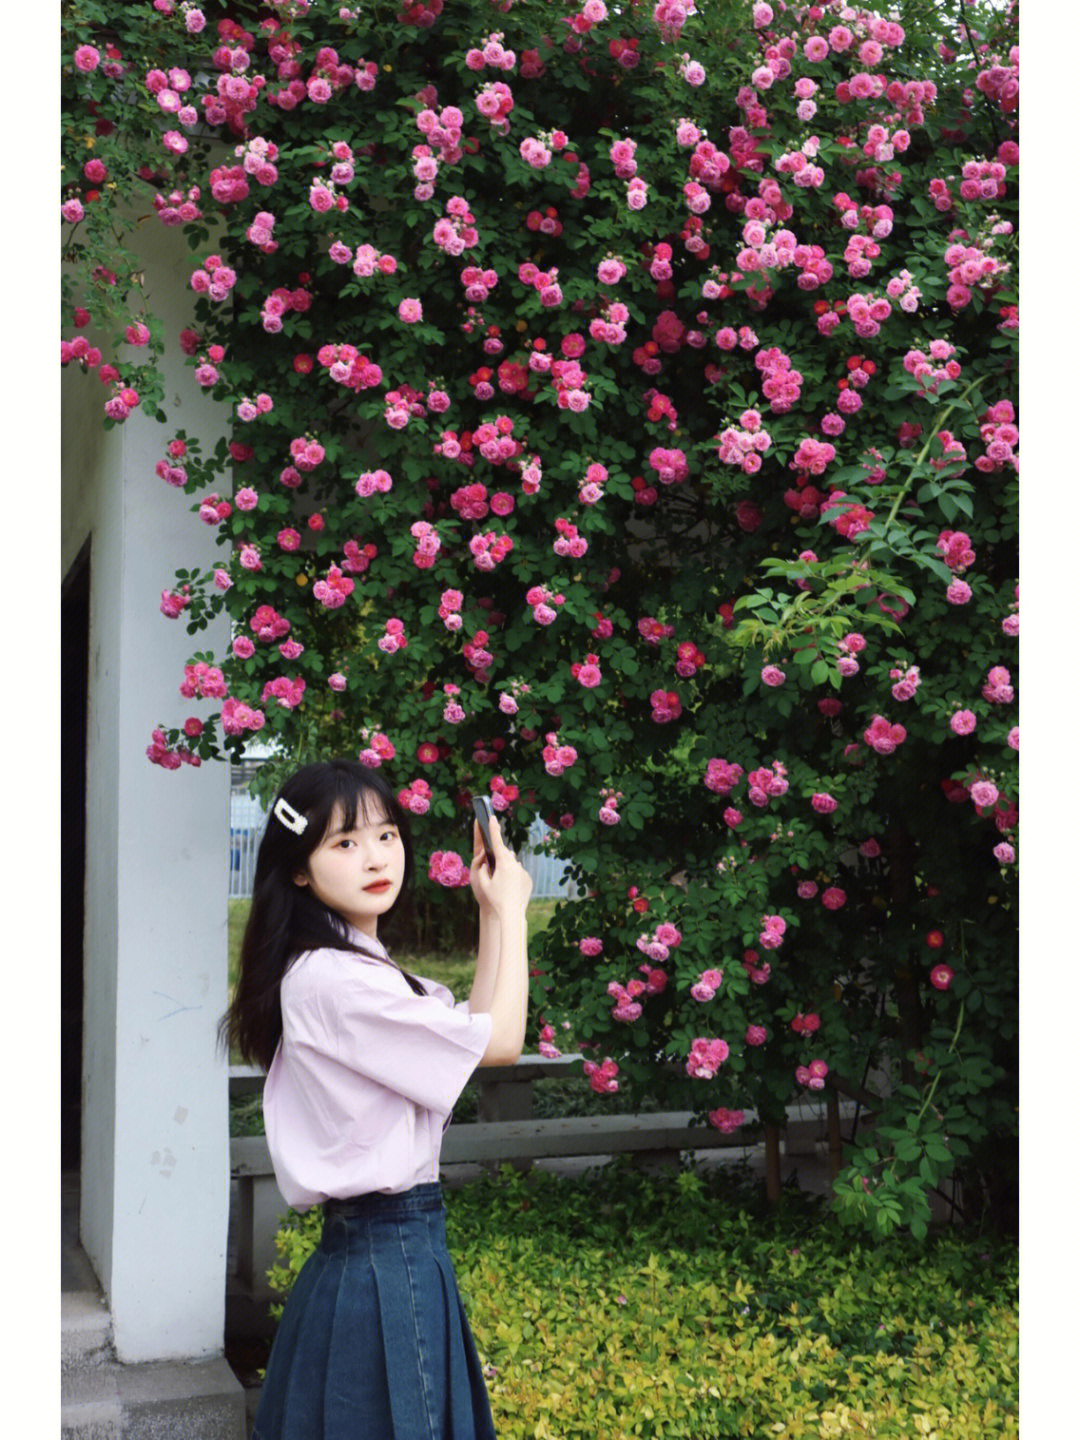 人和蔷薇花的拍照图片图片